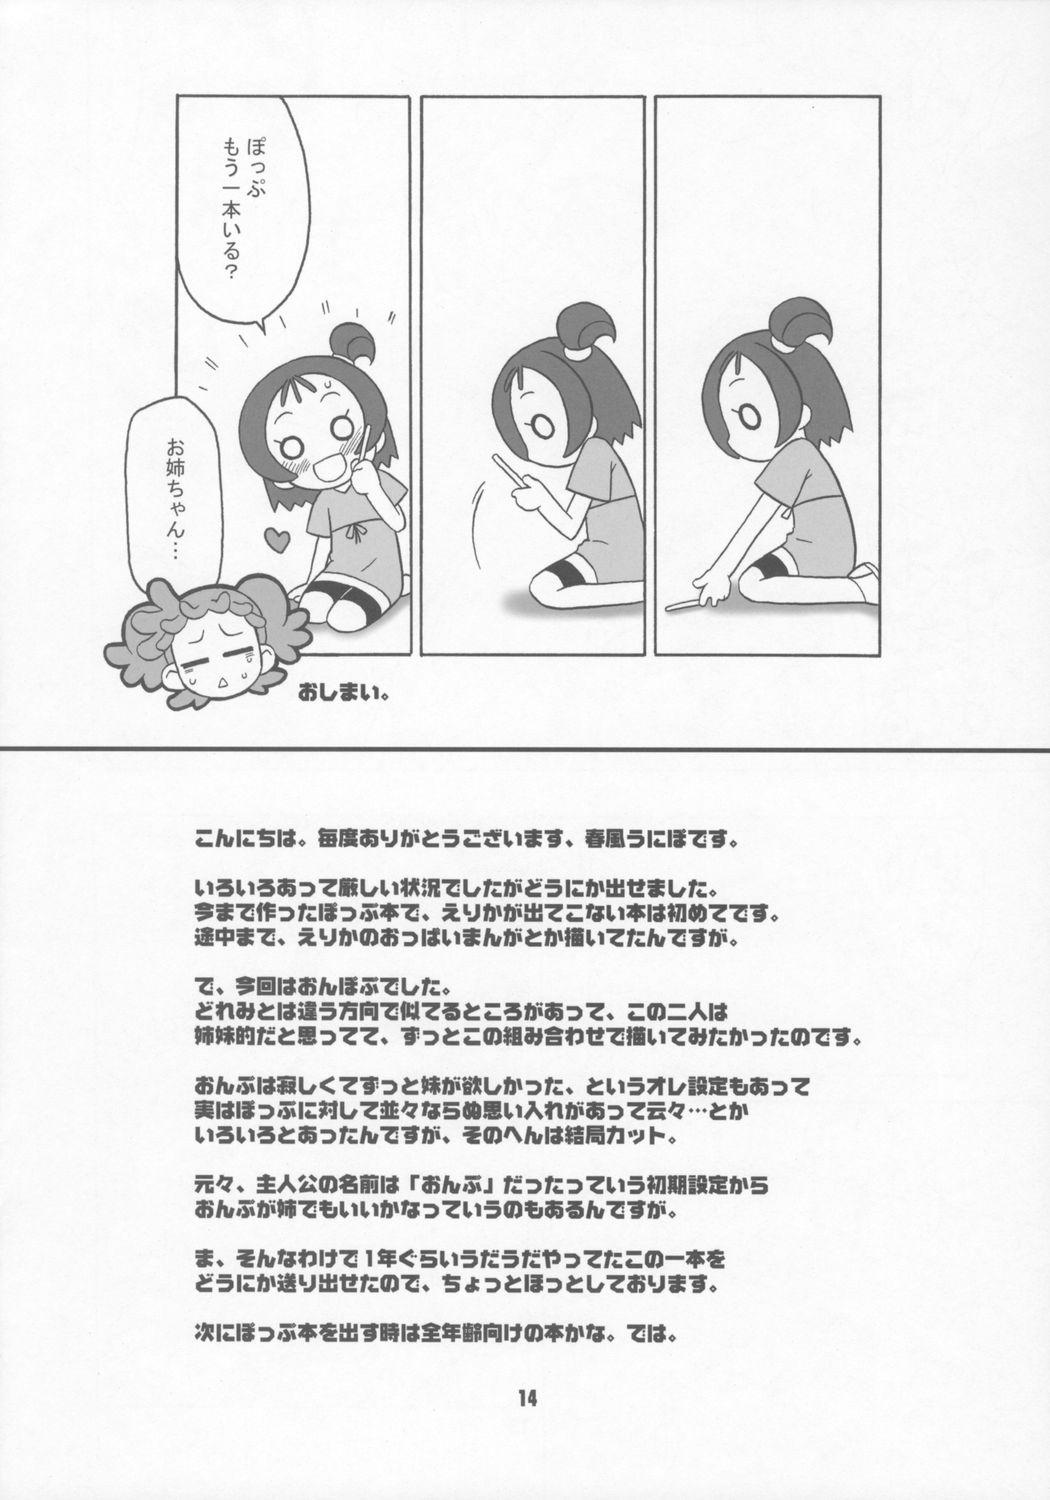 Ex Girlfriend Bokura wa mucha mo suru kedo. - Ojamajo doremi Prostituta - Page 13